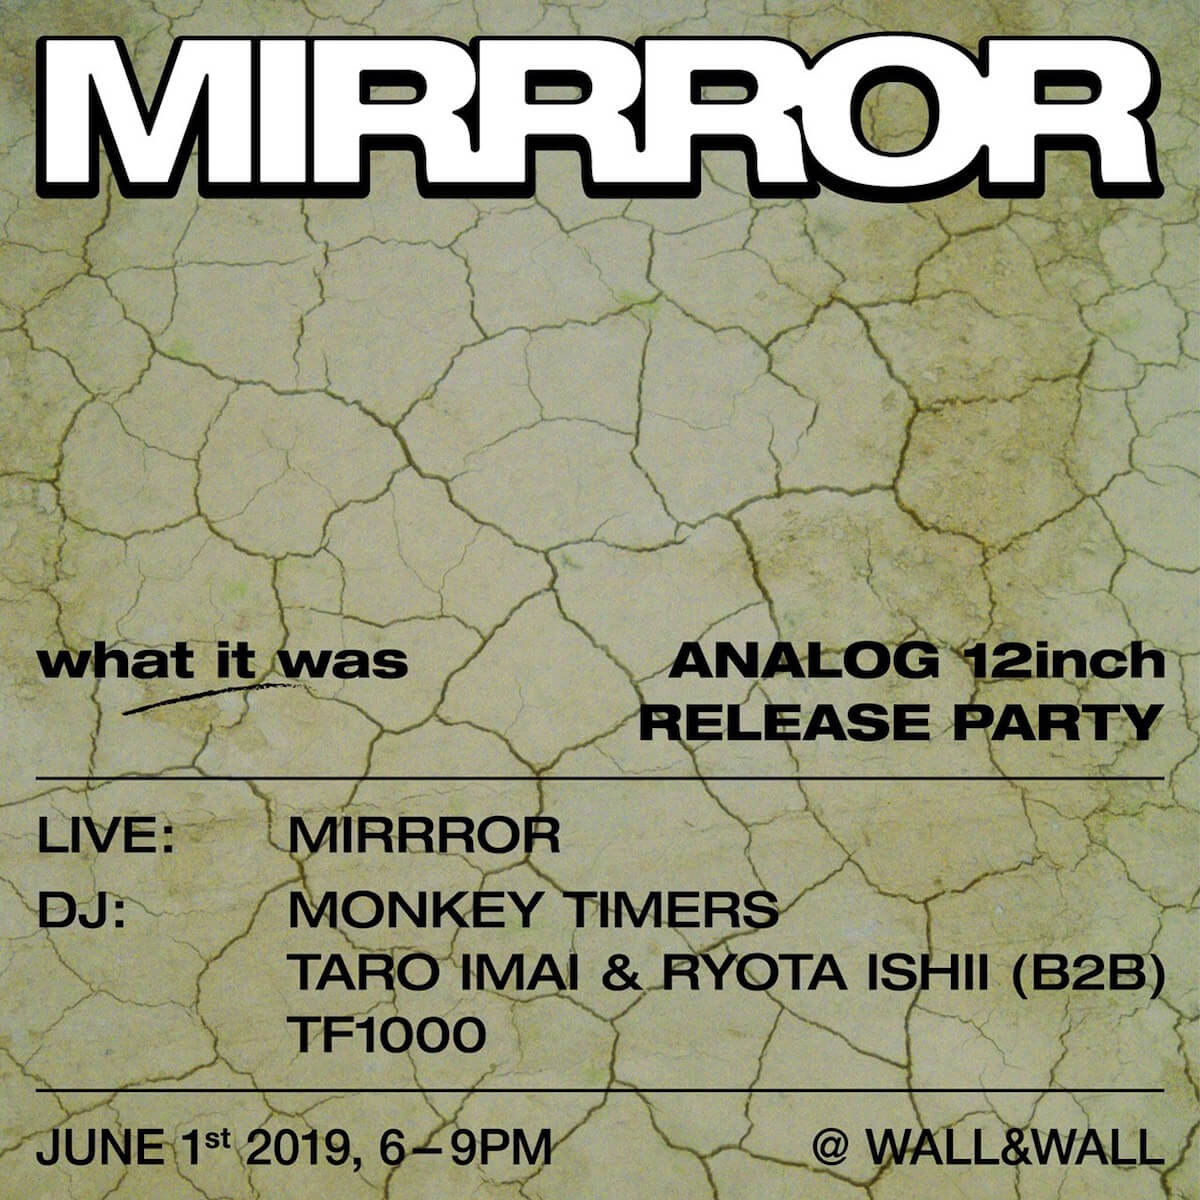 日系アメリカ人ユニット・MIRRROR、初のアナログレコード発売を記念したリリースパーティーの開催が決定 music190517_mirrror_1